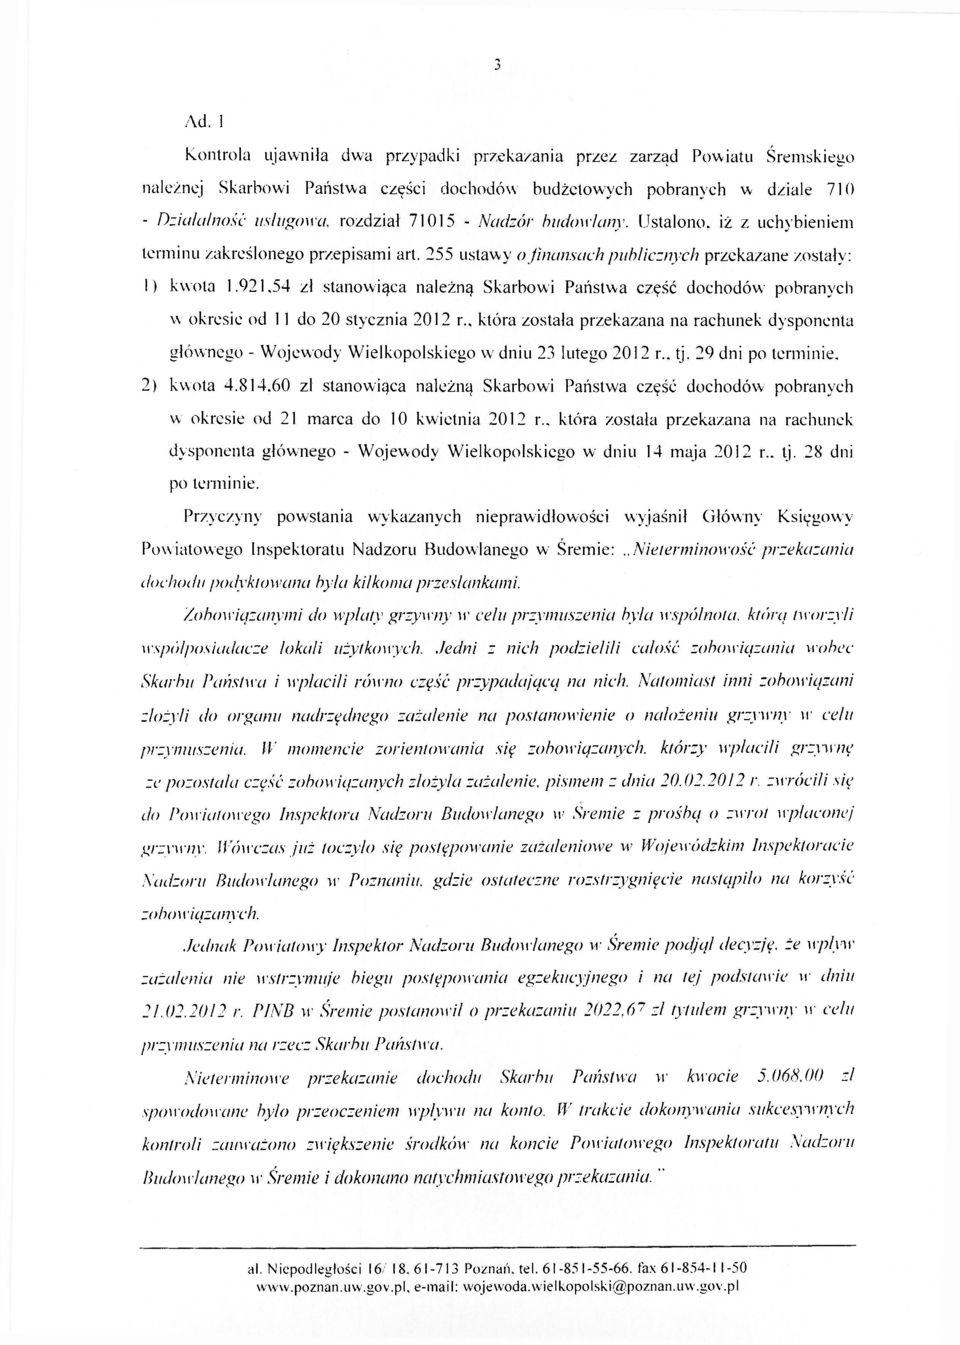 921,54 zł stanowiąca należną Skarbowi Państwa część dochodów pobranych w okresie od 11 do 20 stycznia 2012 r.